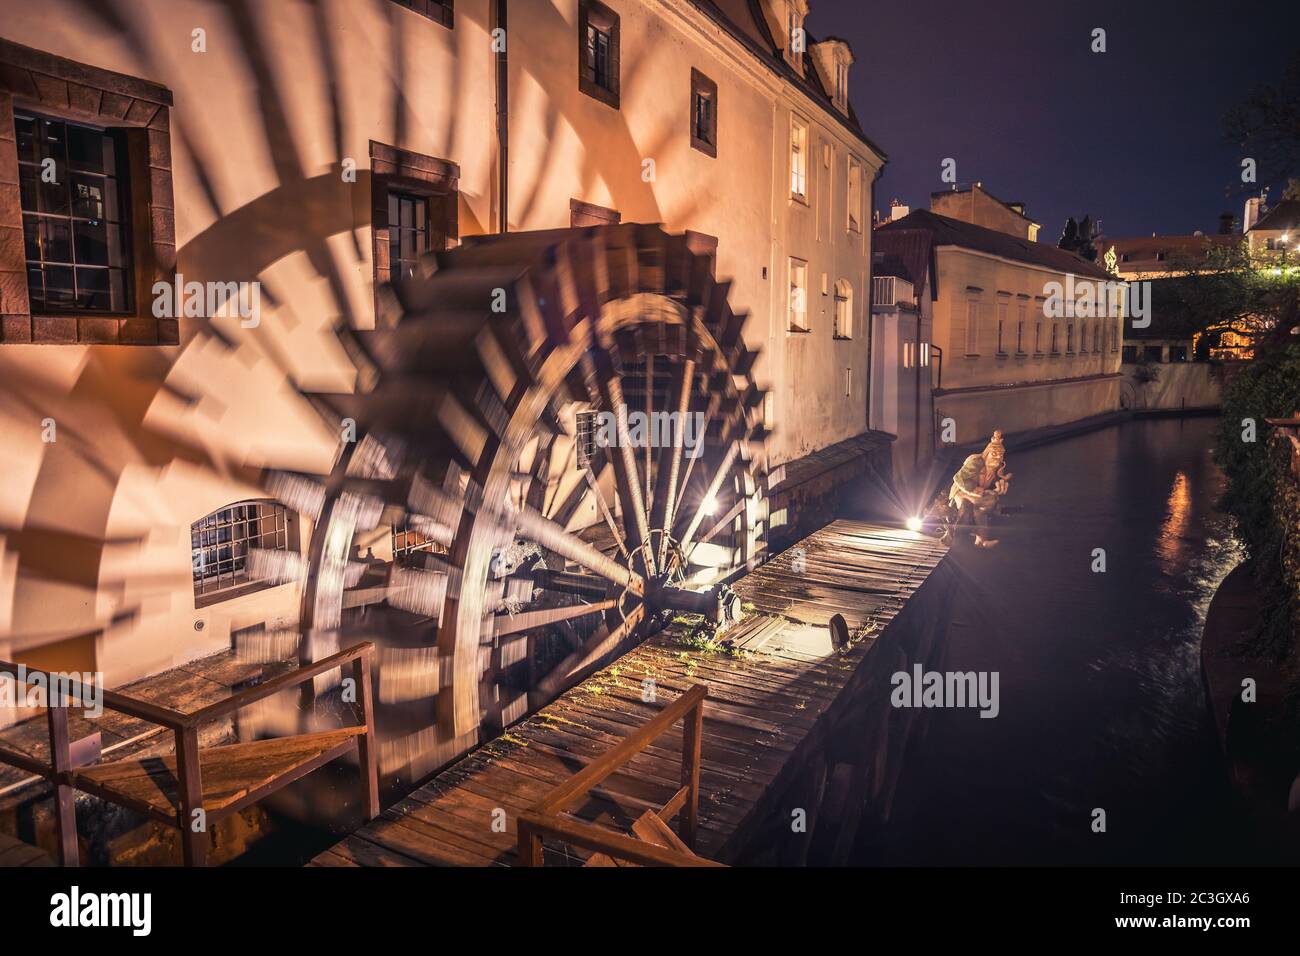 Historische Wassermühle auf Kampa Insel in Prag, Tschechische Republik. Abzweigung der Moldau, der Certovka oder Teufelsstrom. Berühmter Platz in Prag Stockfoto